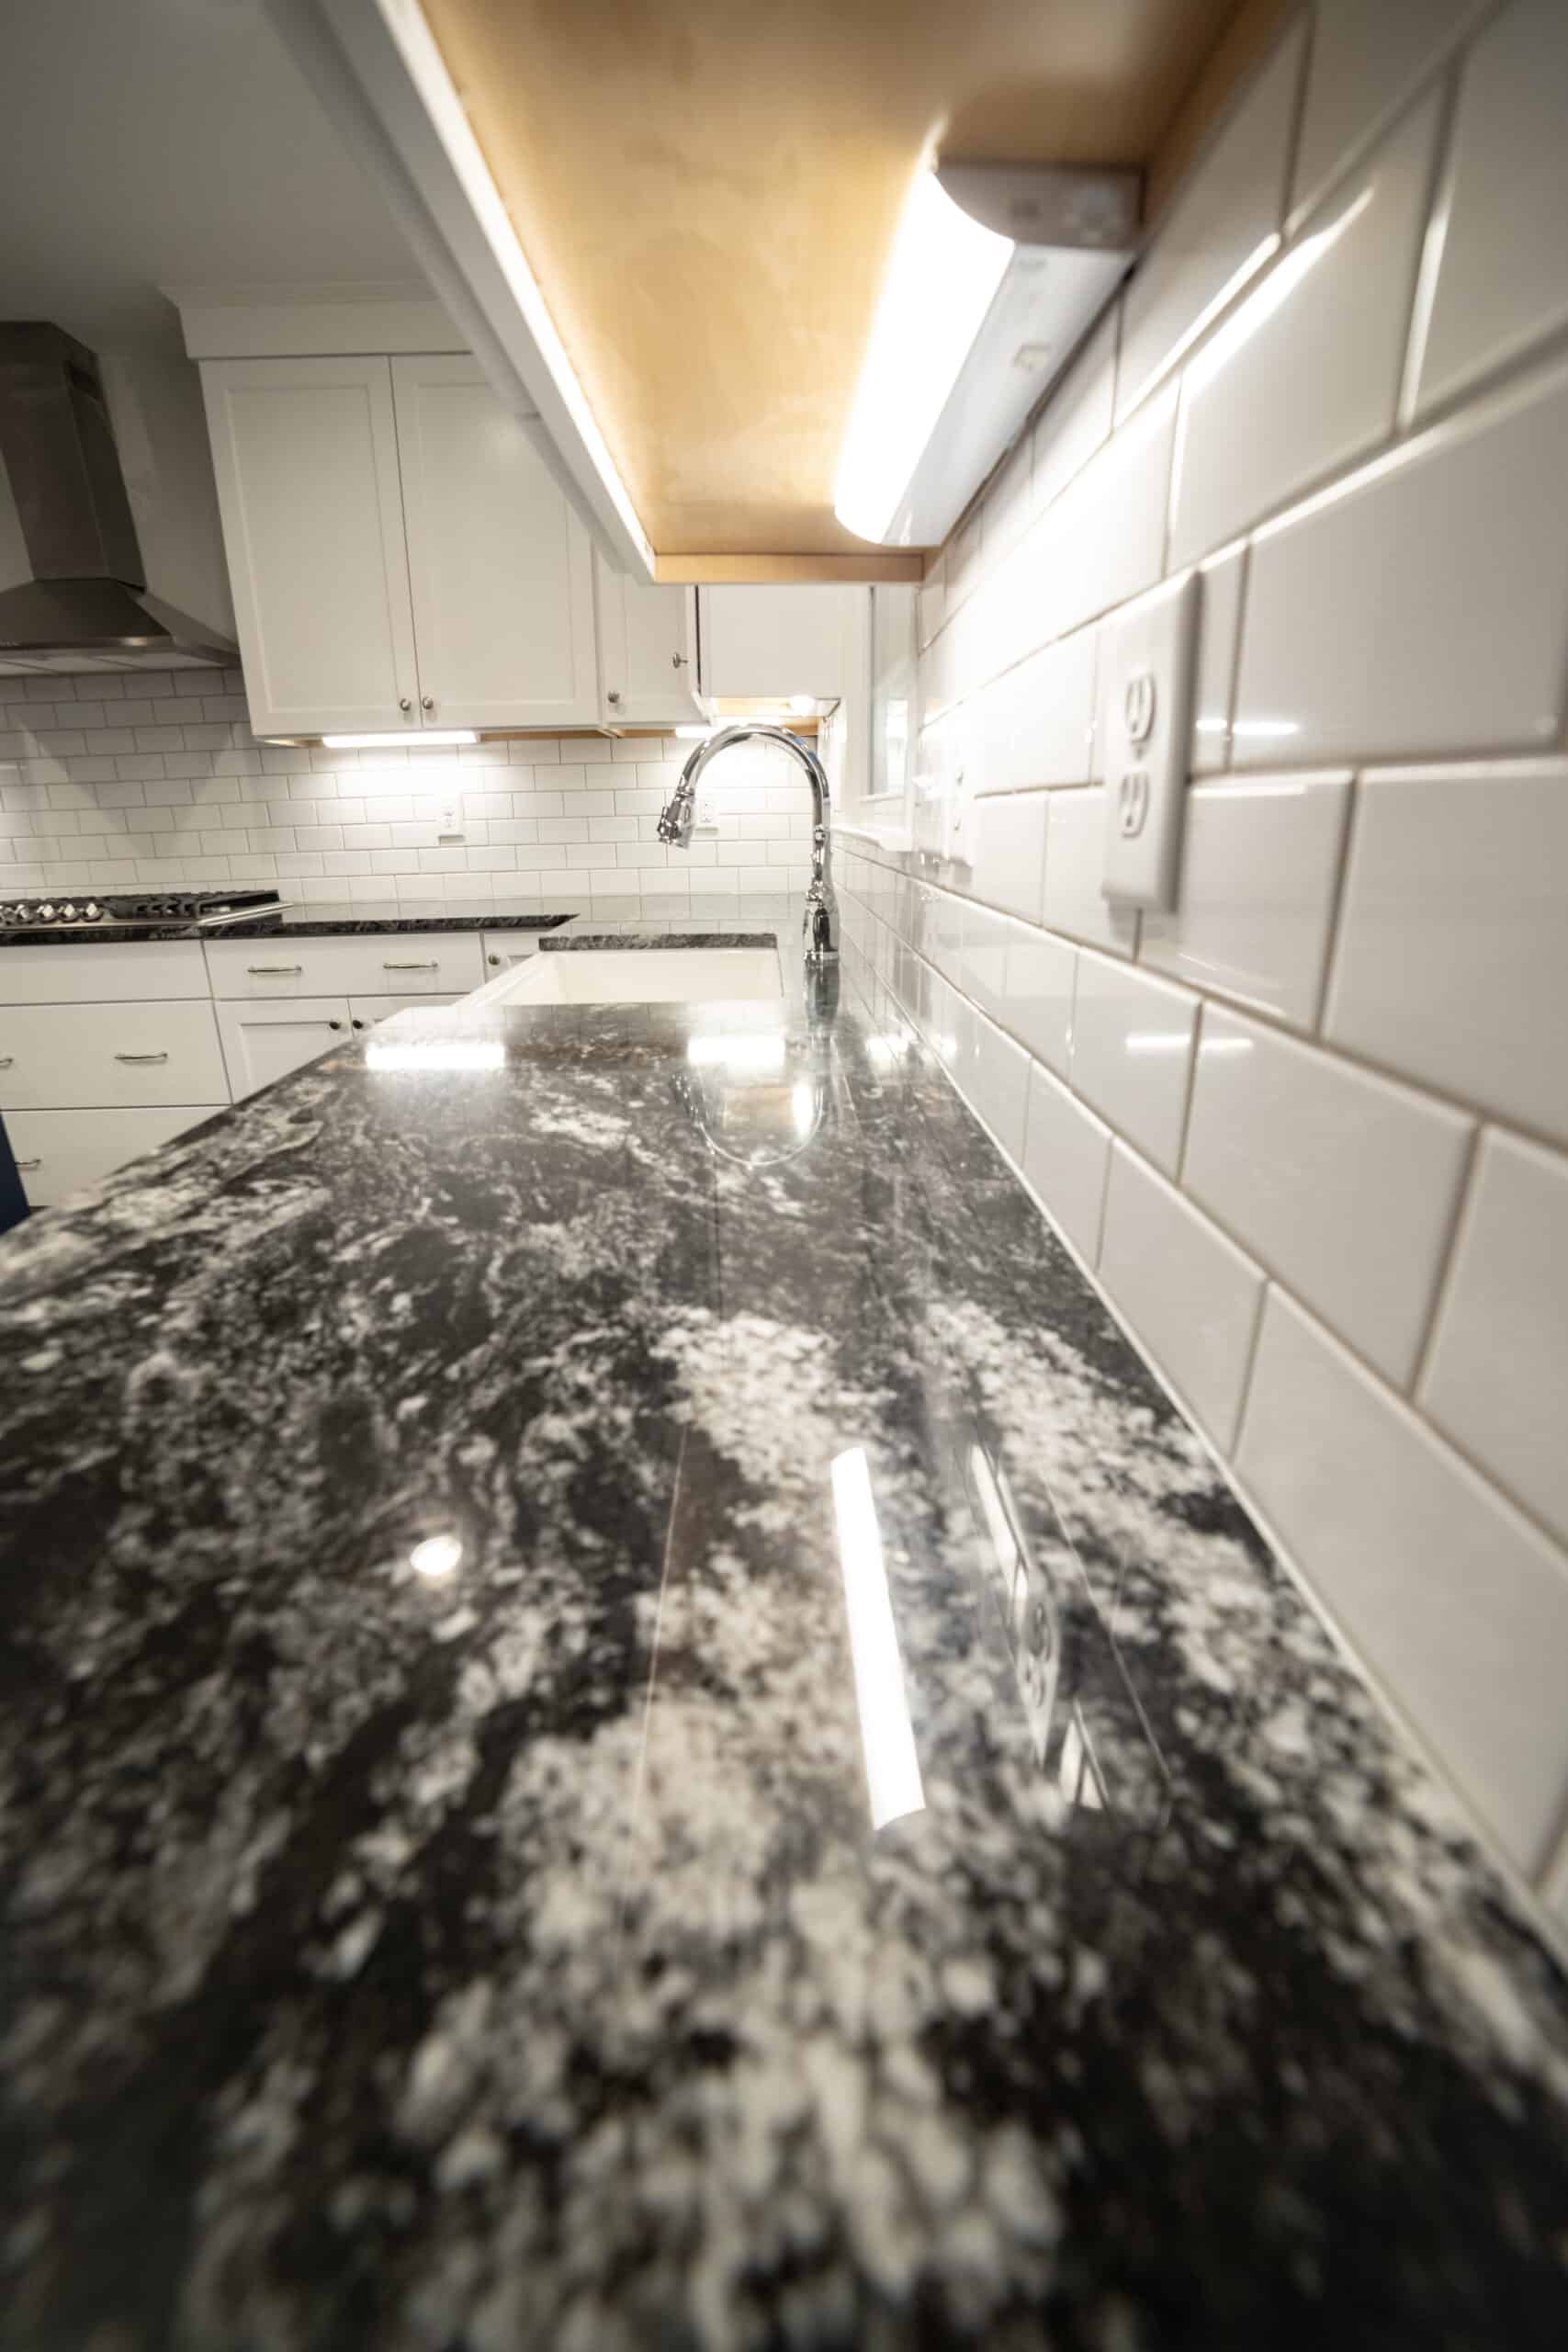 Granite Countertop and Subway Tile Backsplash